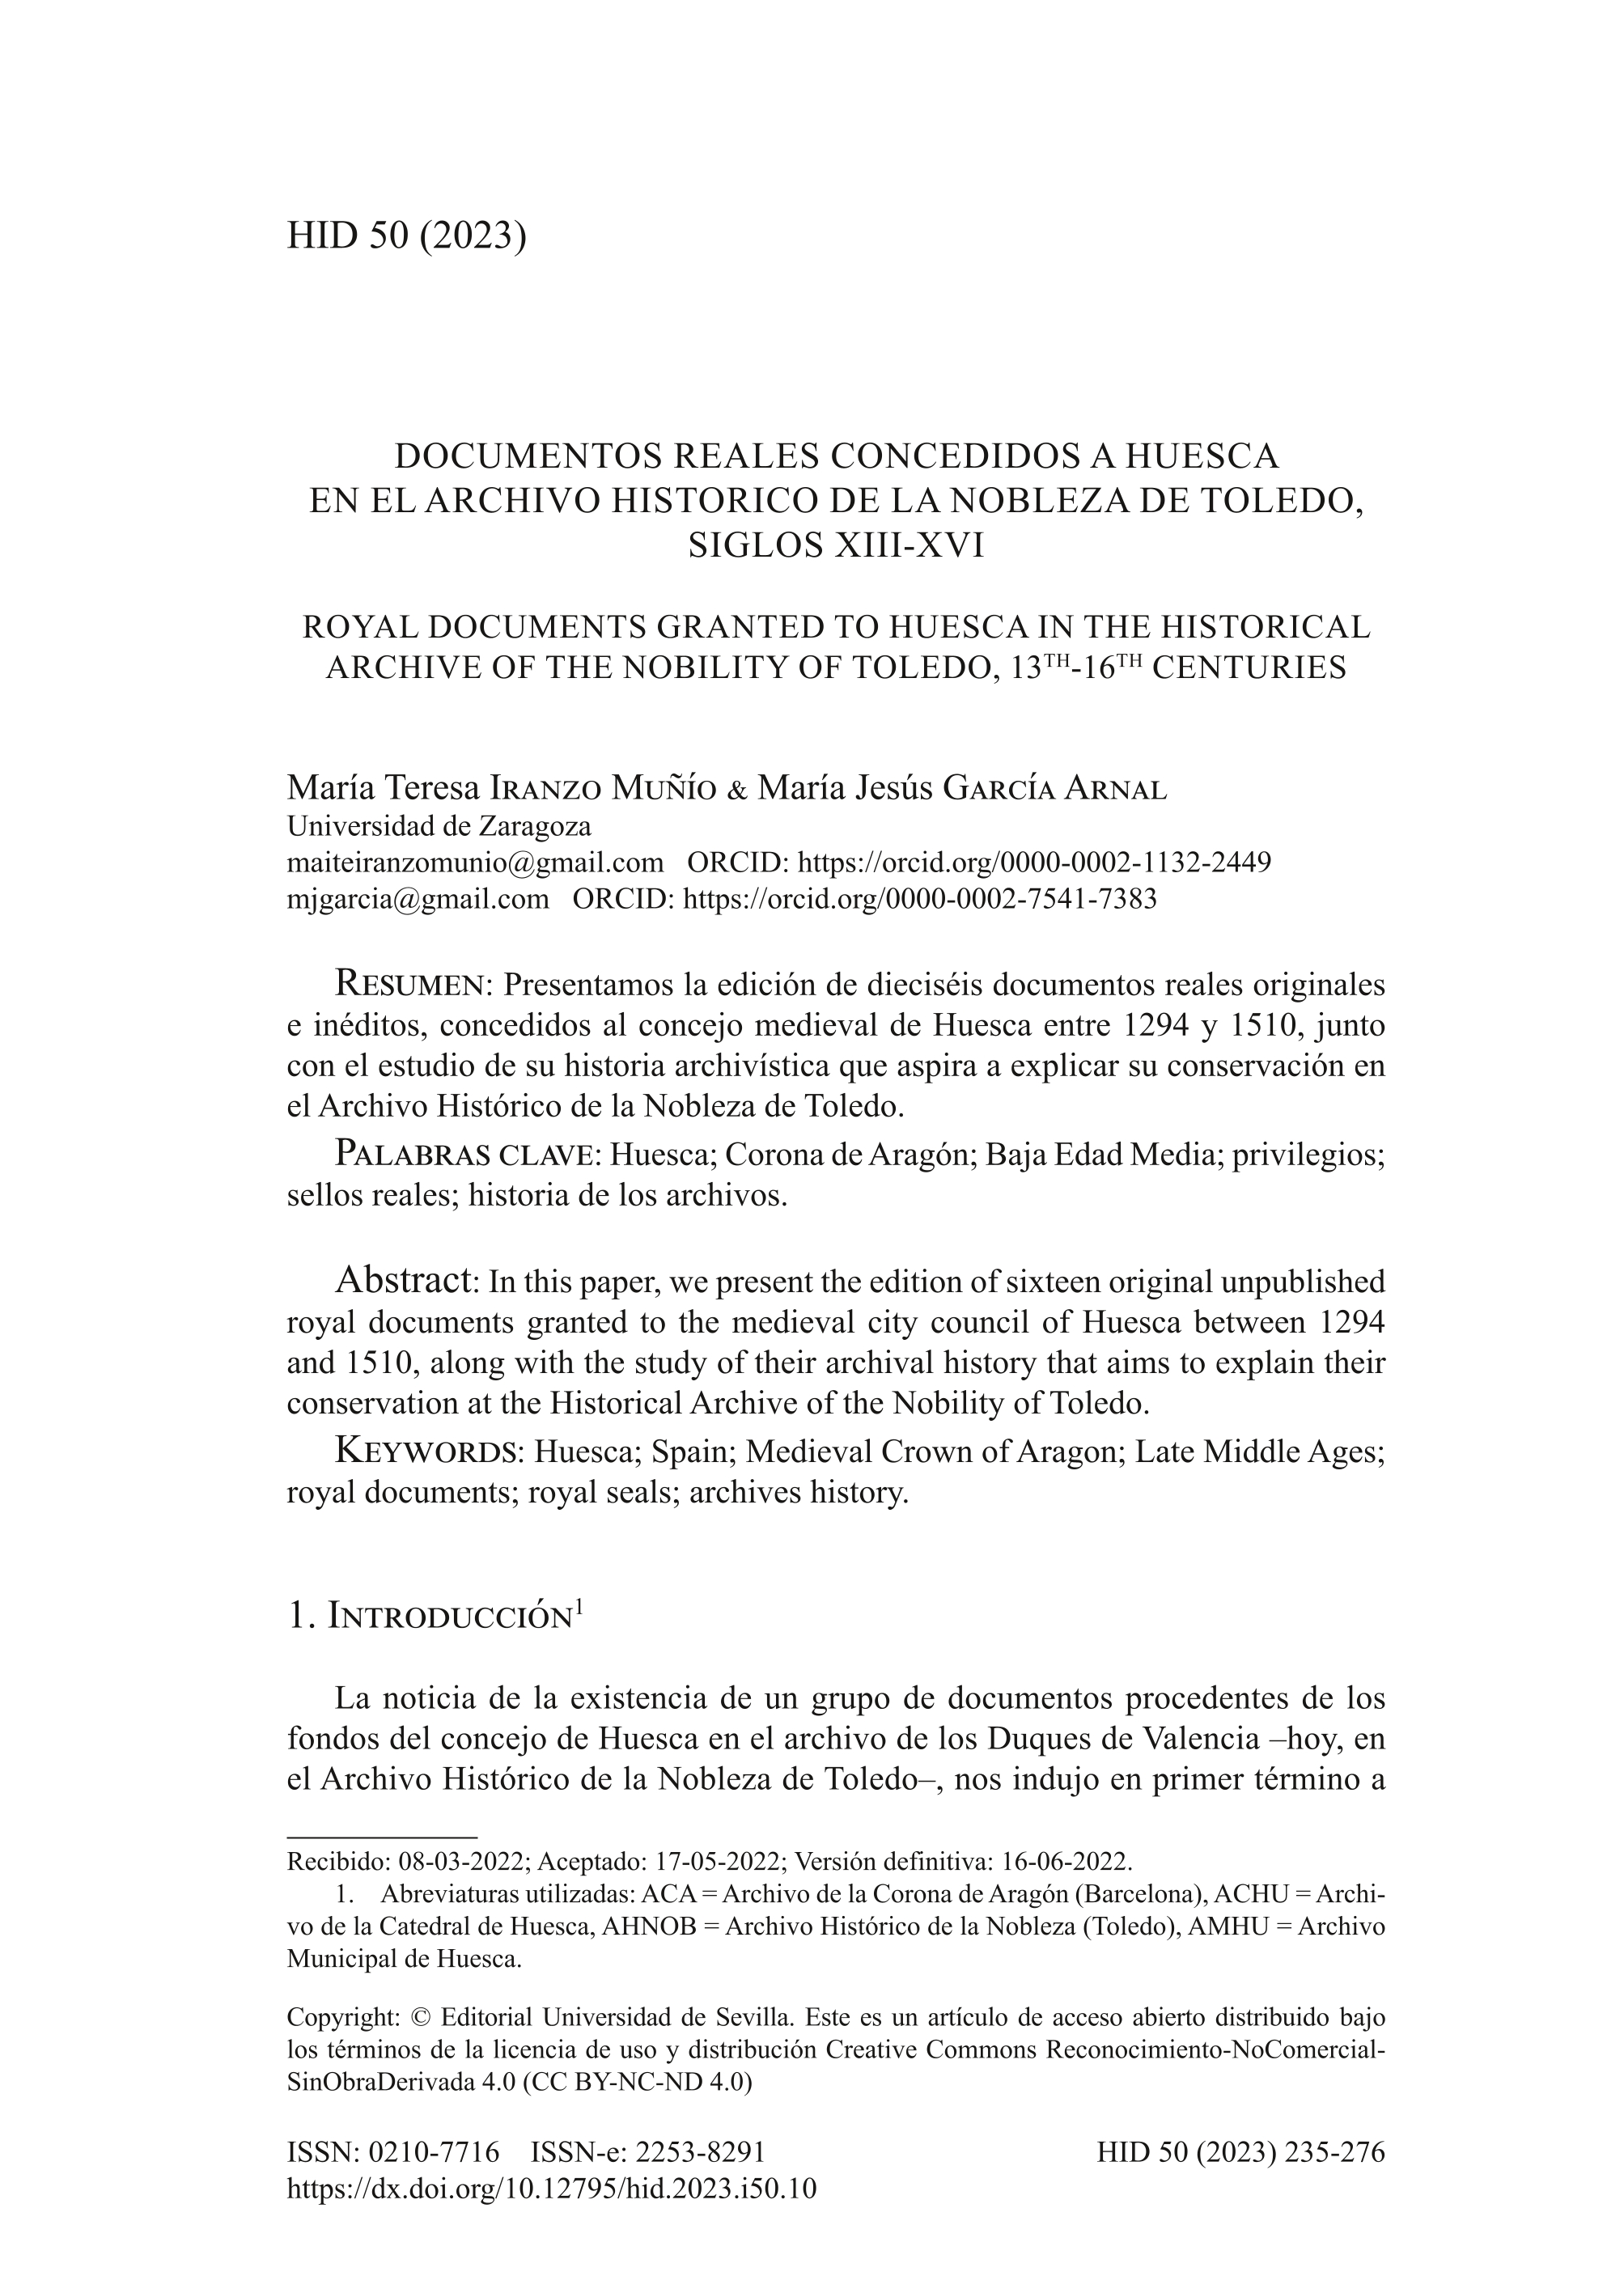 Documentos reales concedidos a Huesca en el Archivo Histórico de la Nobleza de Toledo, siglos XIII-XVI